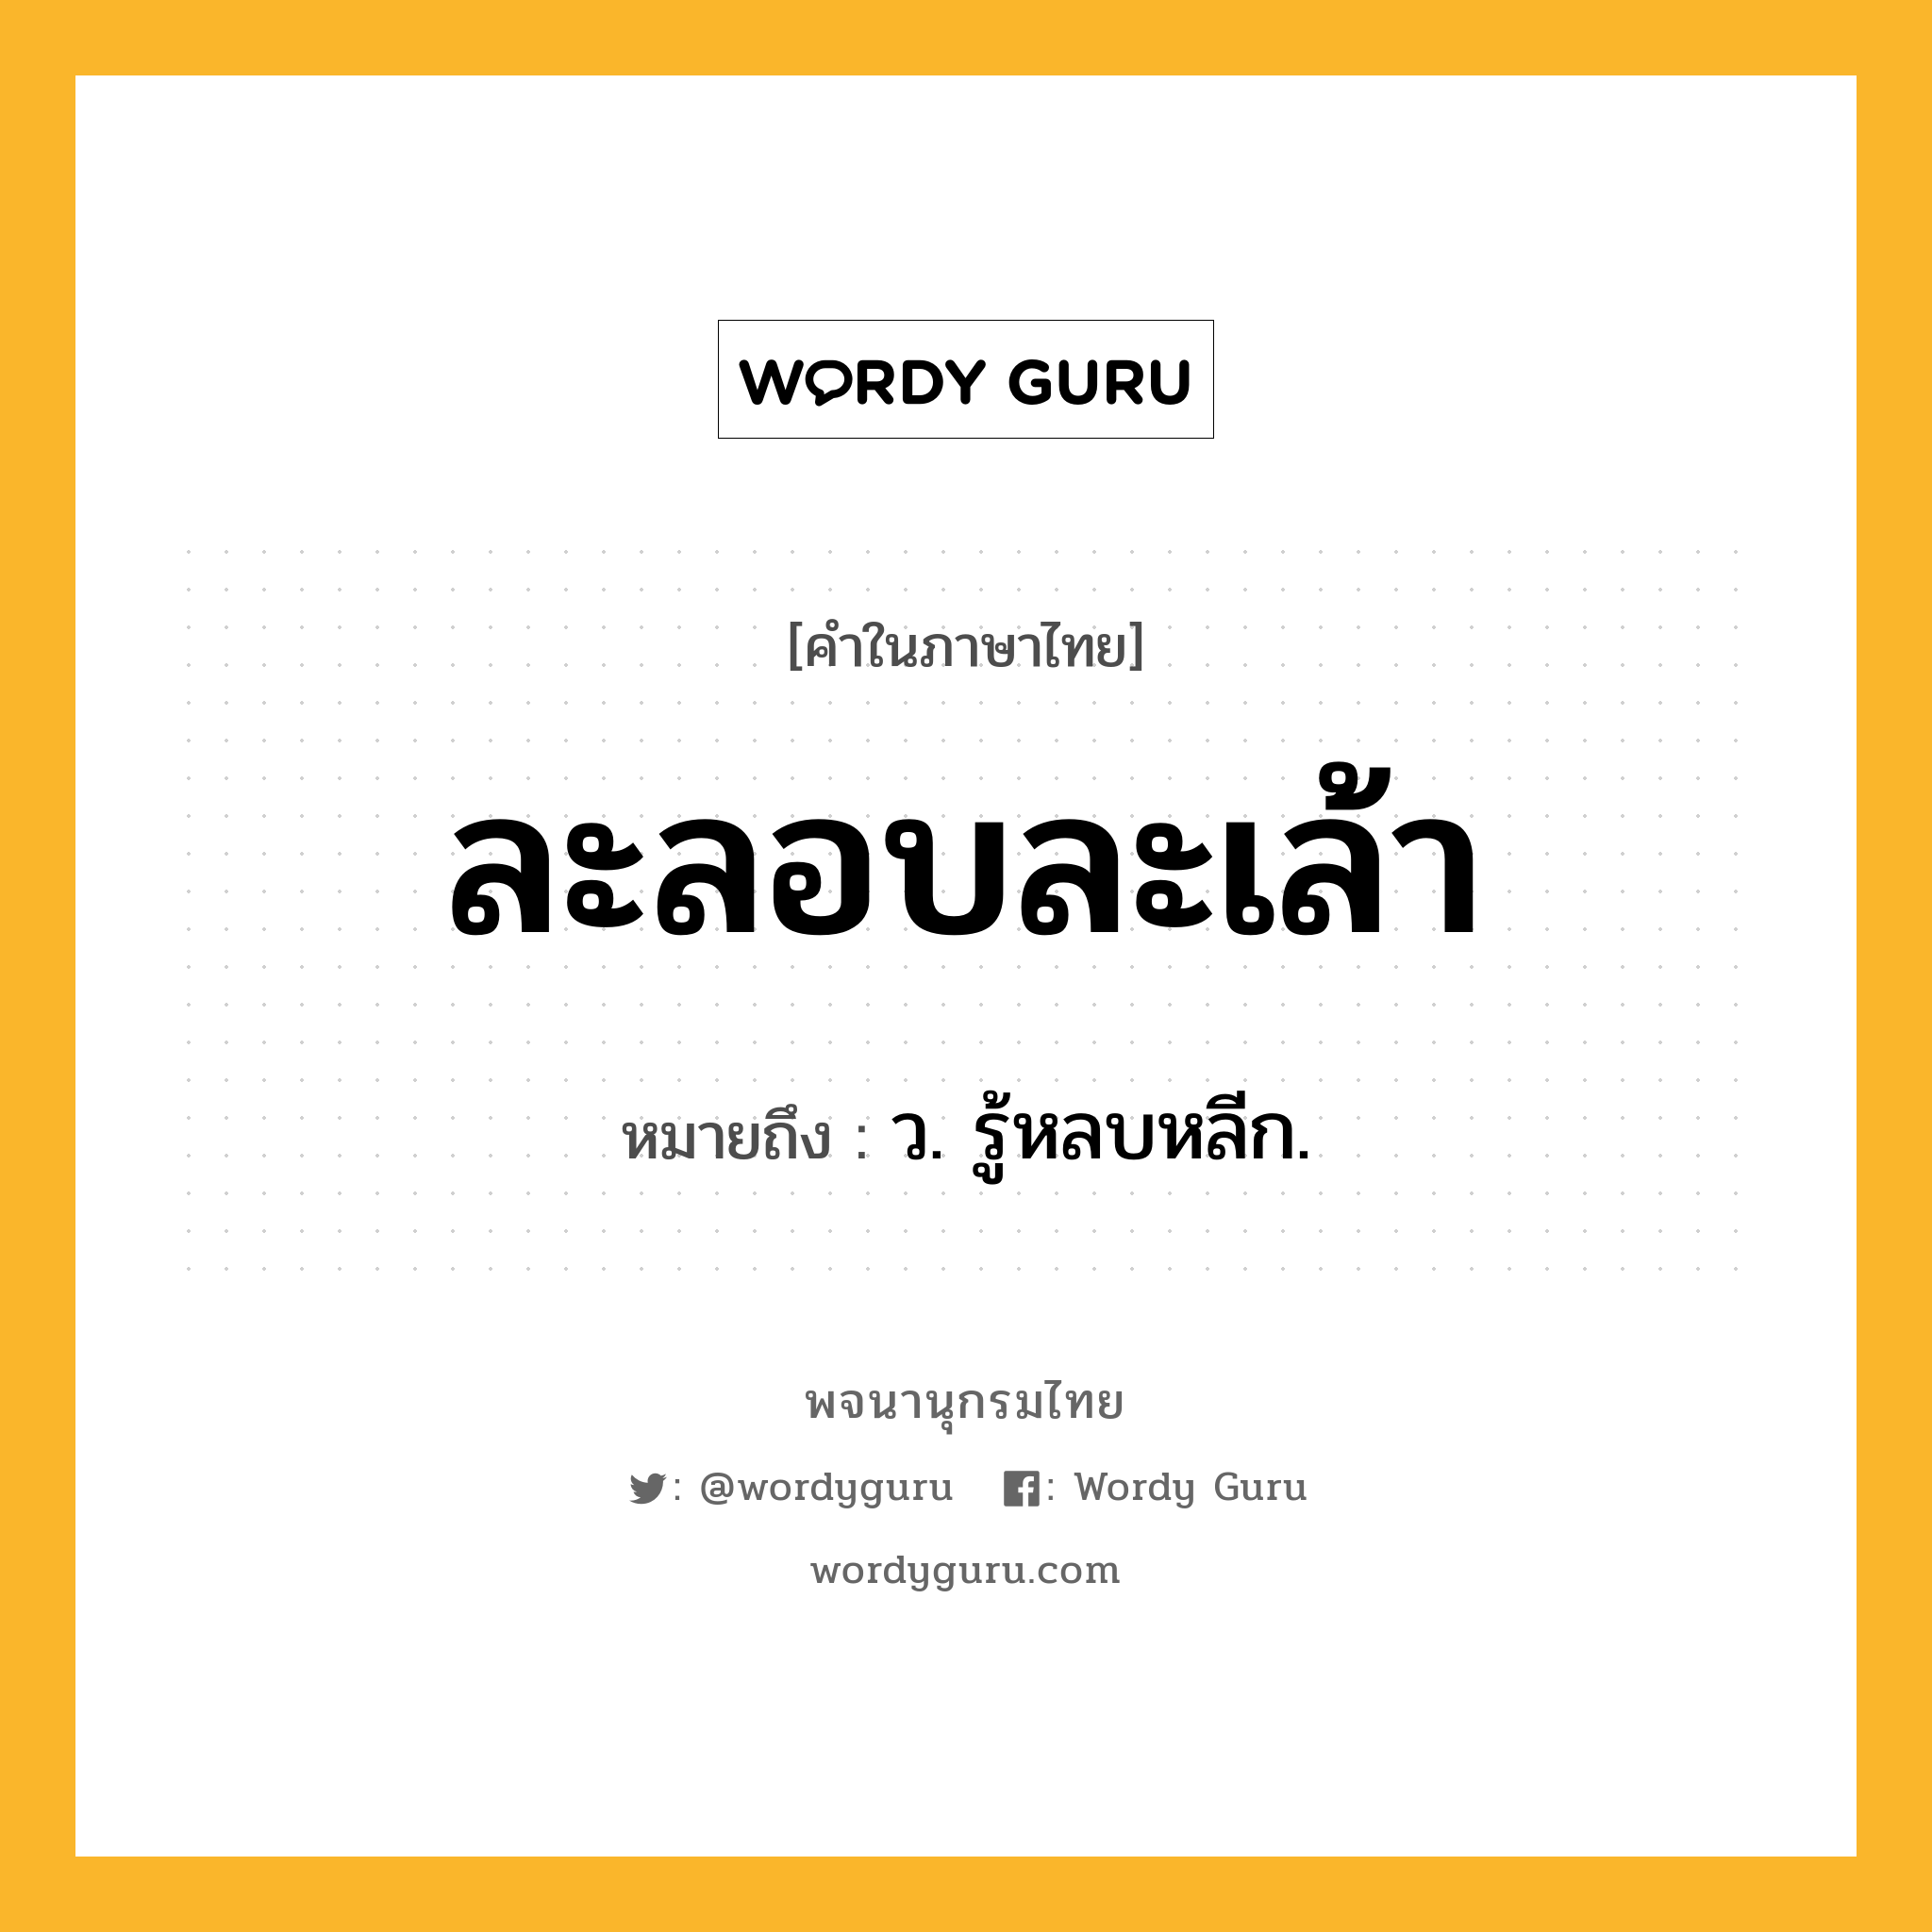 ละลอบละเล้า ความหมาย หมายถึงอะไร?, คำในภาษาไทย ละลอบละเล้า หมายถึง ว. รู้หลบหลีก.